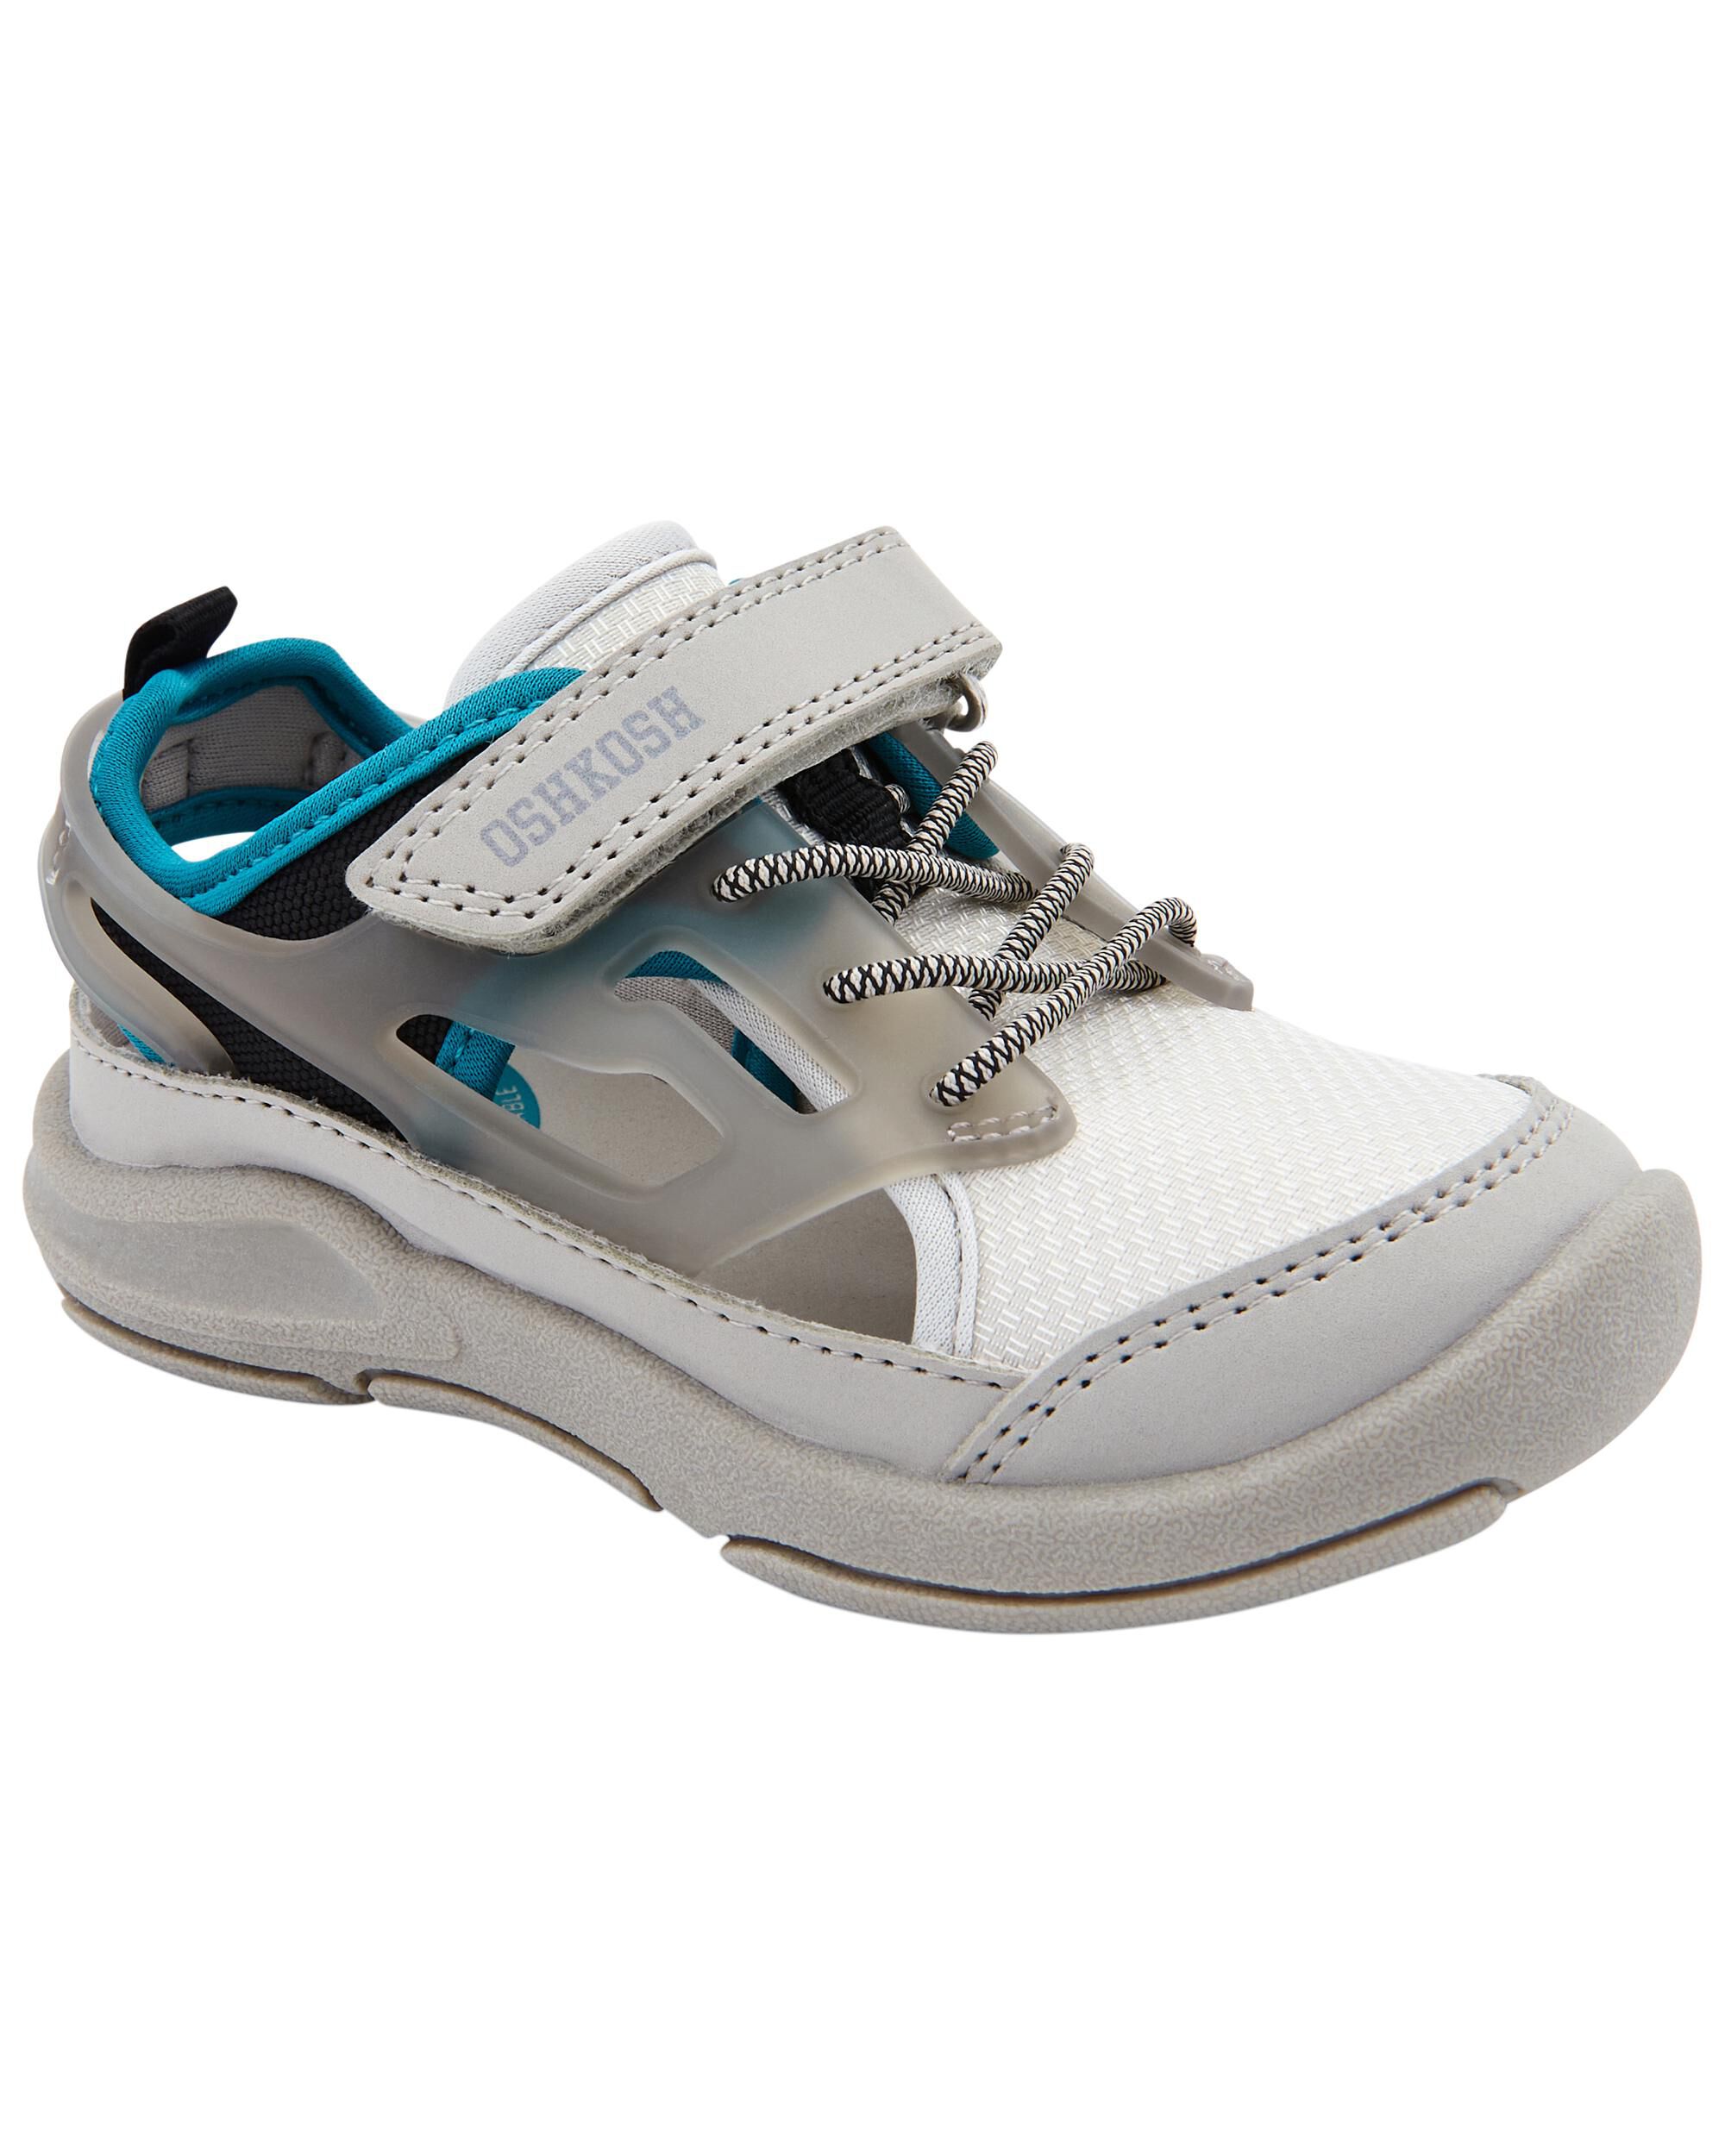 Toddler Boy Shoes (Sizes 4-12) | OshKosh | Free Shipping